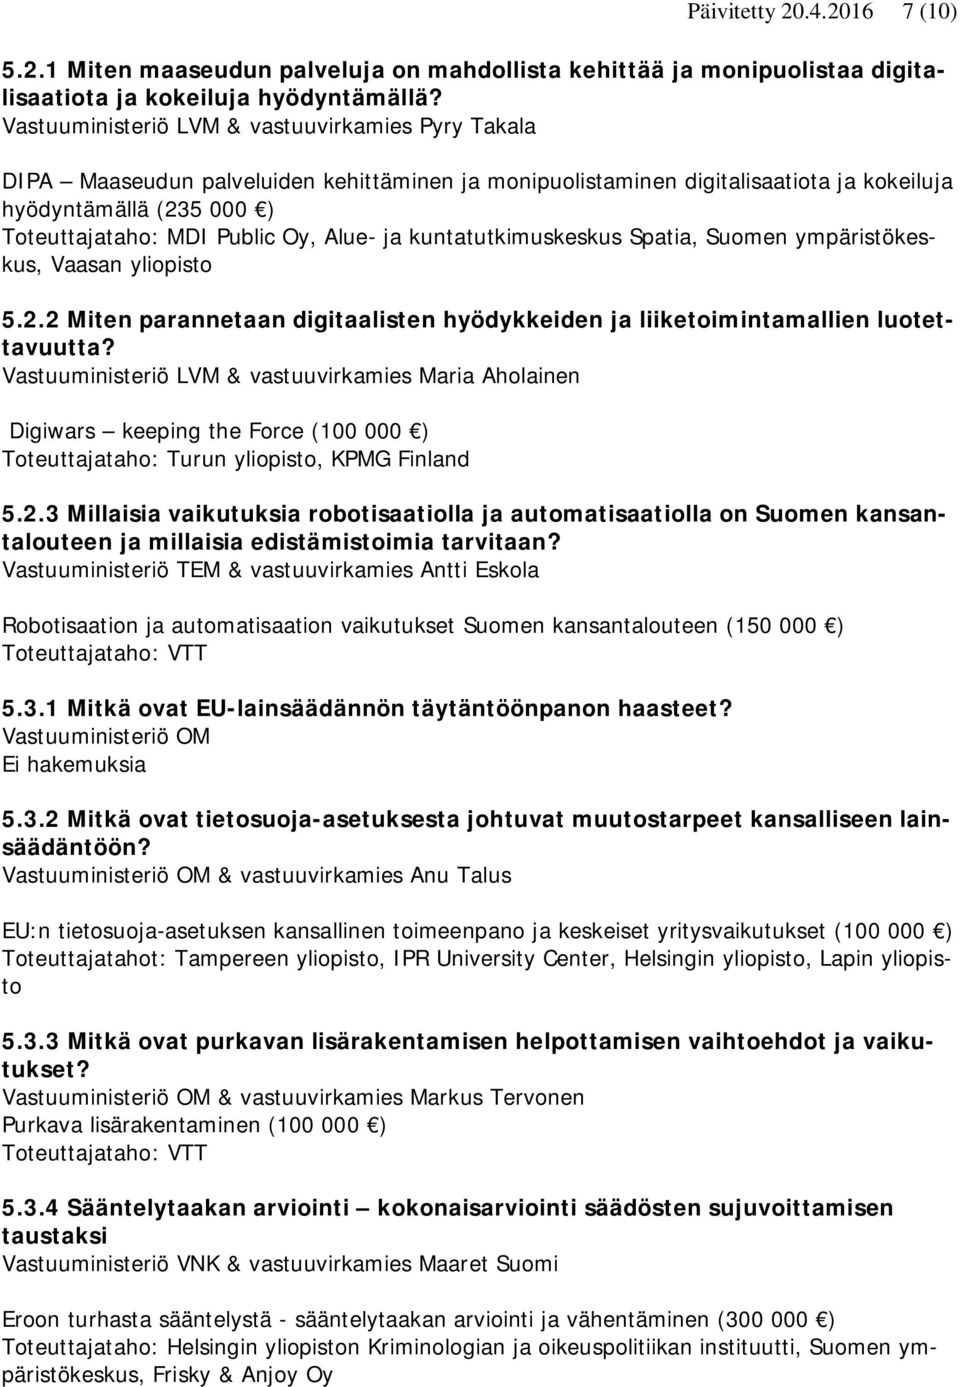 Alue- ja kuntatutkimuskeskus Spatia, Suomen ympäristökeskus, Vaasan yliopisto 5.2.2 Miten parannetaan digitaalisten hyödykkeiden ja liiketoimintamallien luotettavuutta?